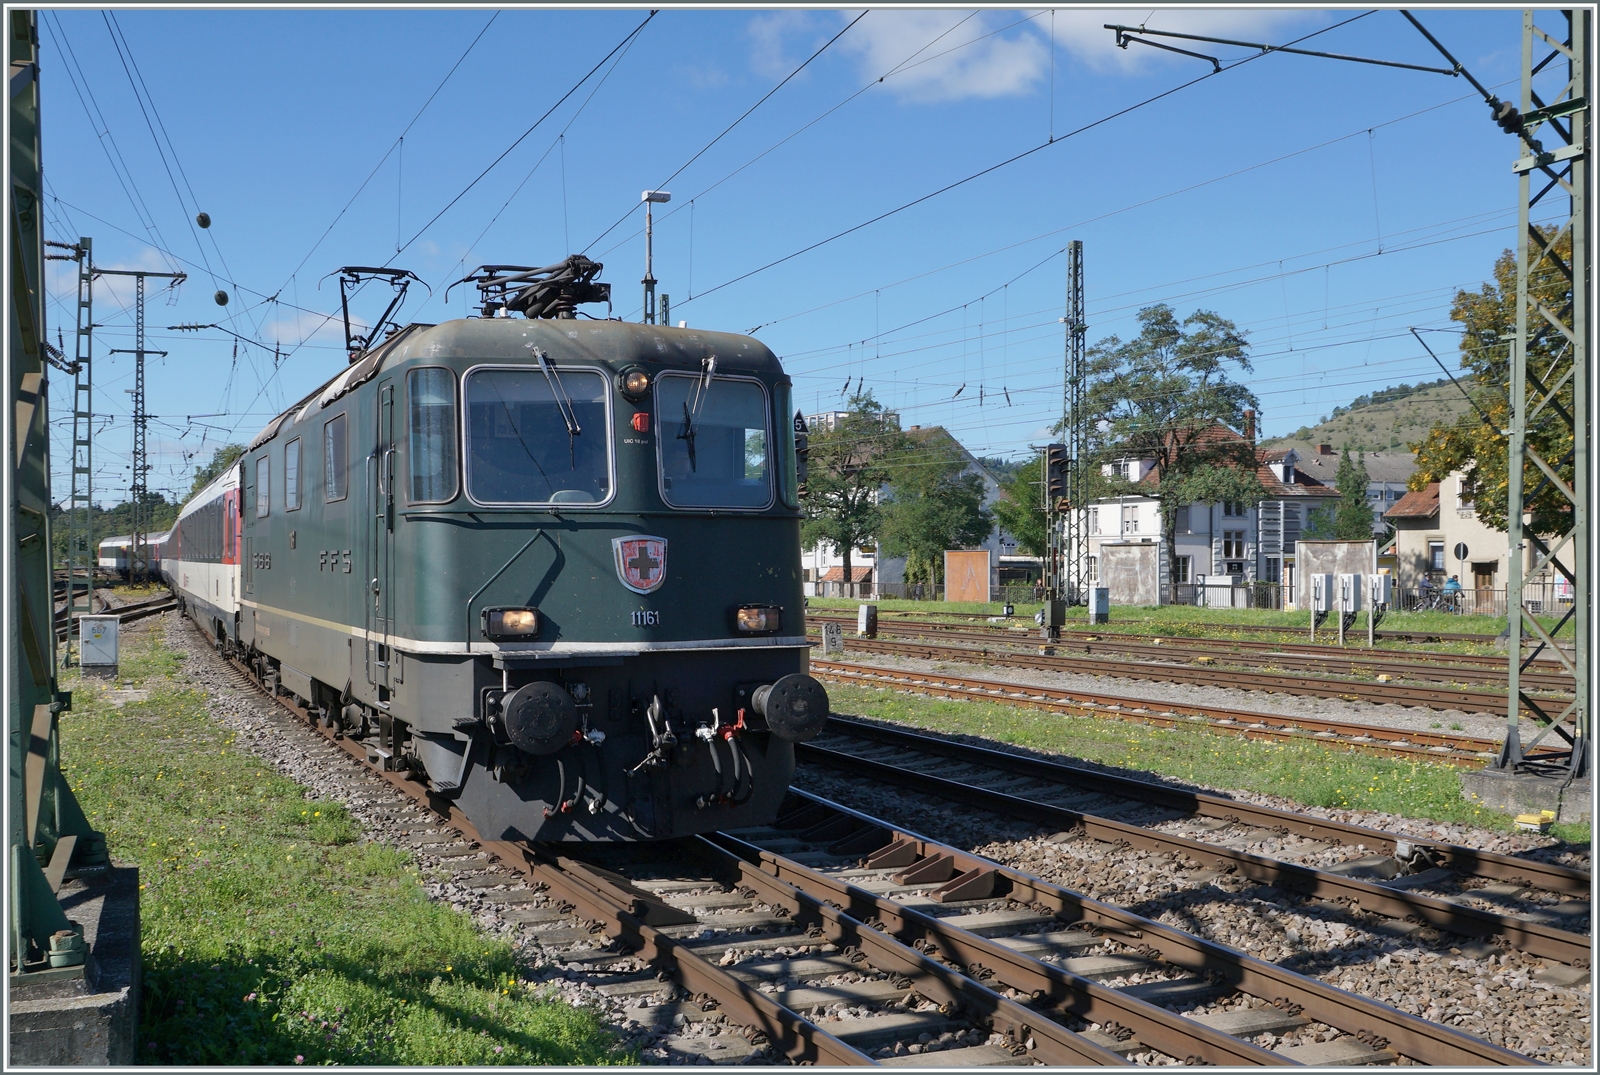 Die SBB Re 4/4 II 11161 in ihrer grünen Lackierung erreicht mit einem IC von Zürich nach Stuttgart den Bahnhof Singen. 

Die grüne Farbe ist übrigens NICHT die Ursprungs-Lackierung der Re 4/4 II 11161, die Lok wurde 1967 in TEE Farben ausgeliefert und bekam erst nach dem Ende des TEE-Einsatzes 1981/82 die heutige grüne Lackierung. 19. September 2022